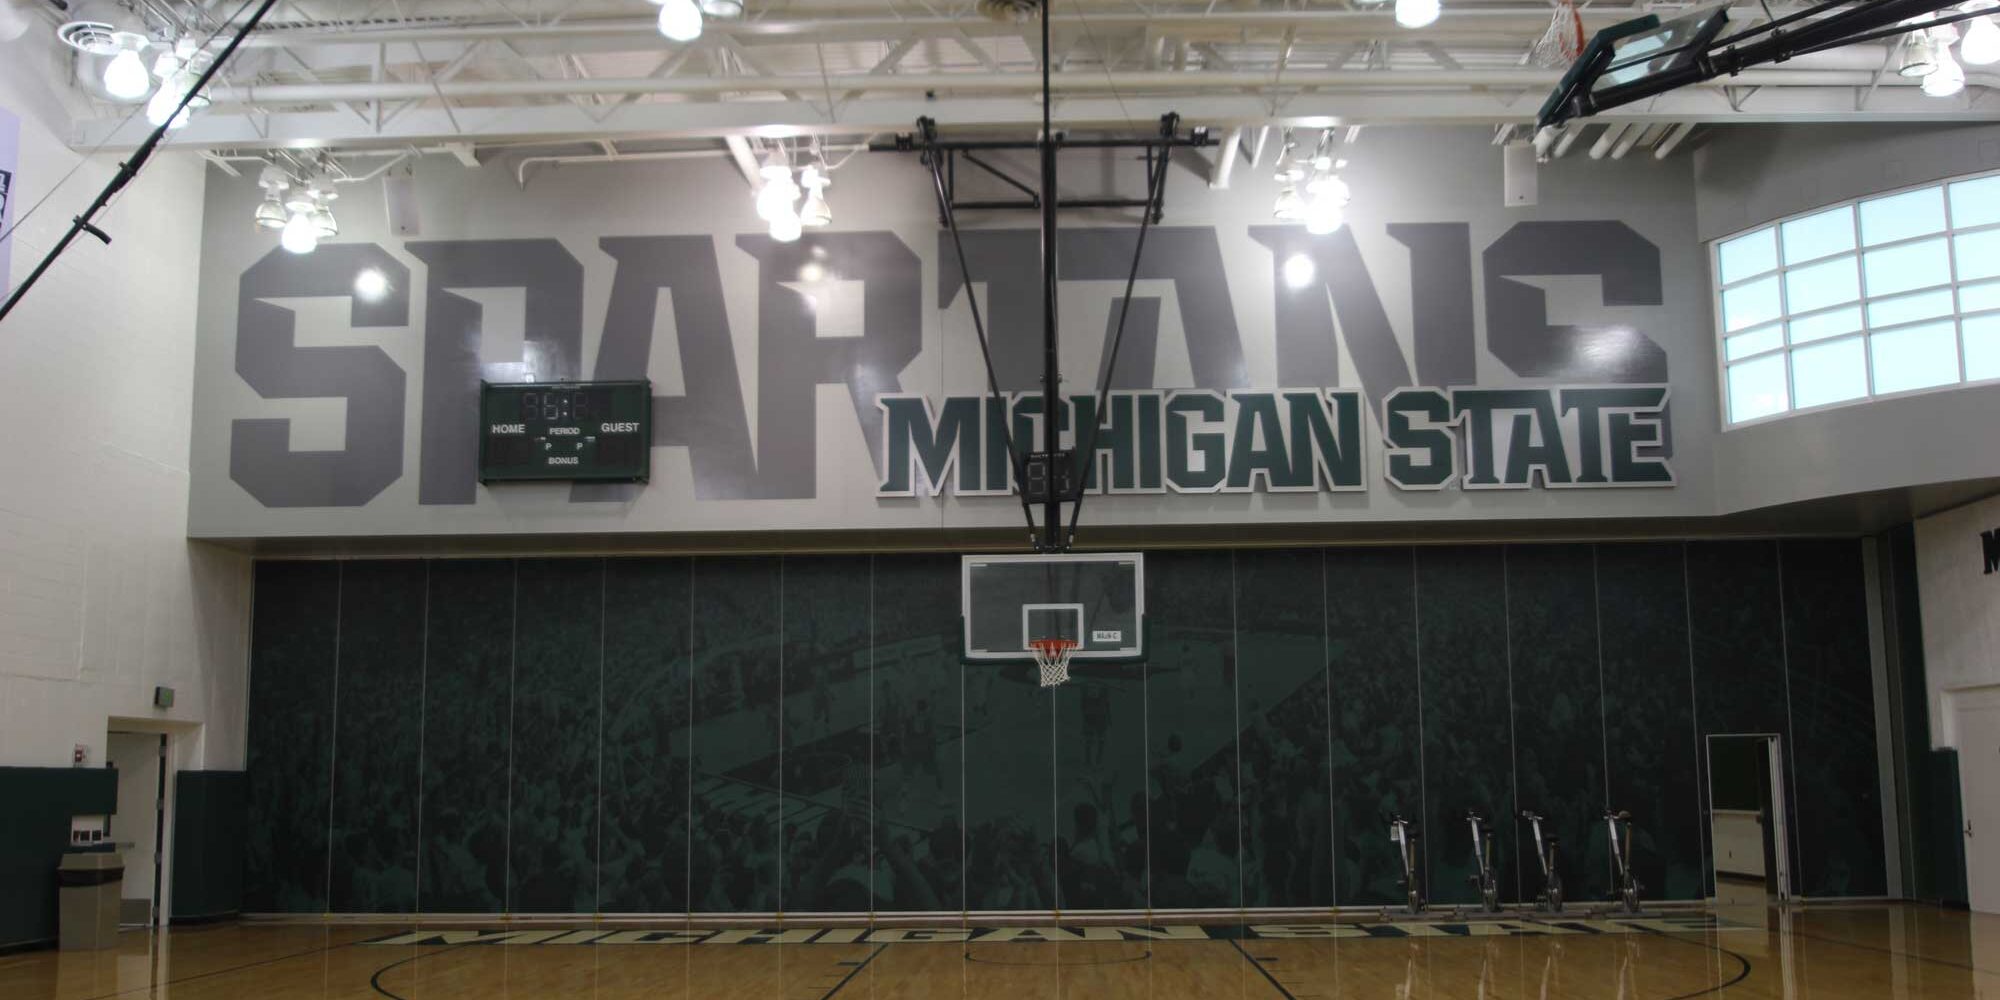 品牌为密歇根州立大学篮球训练设施